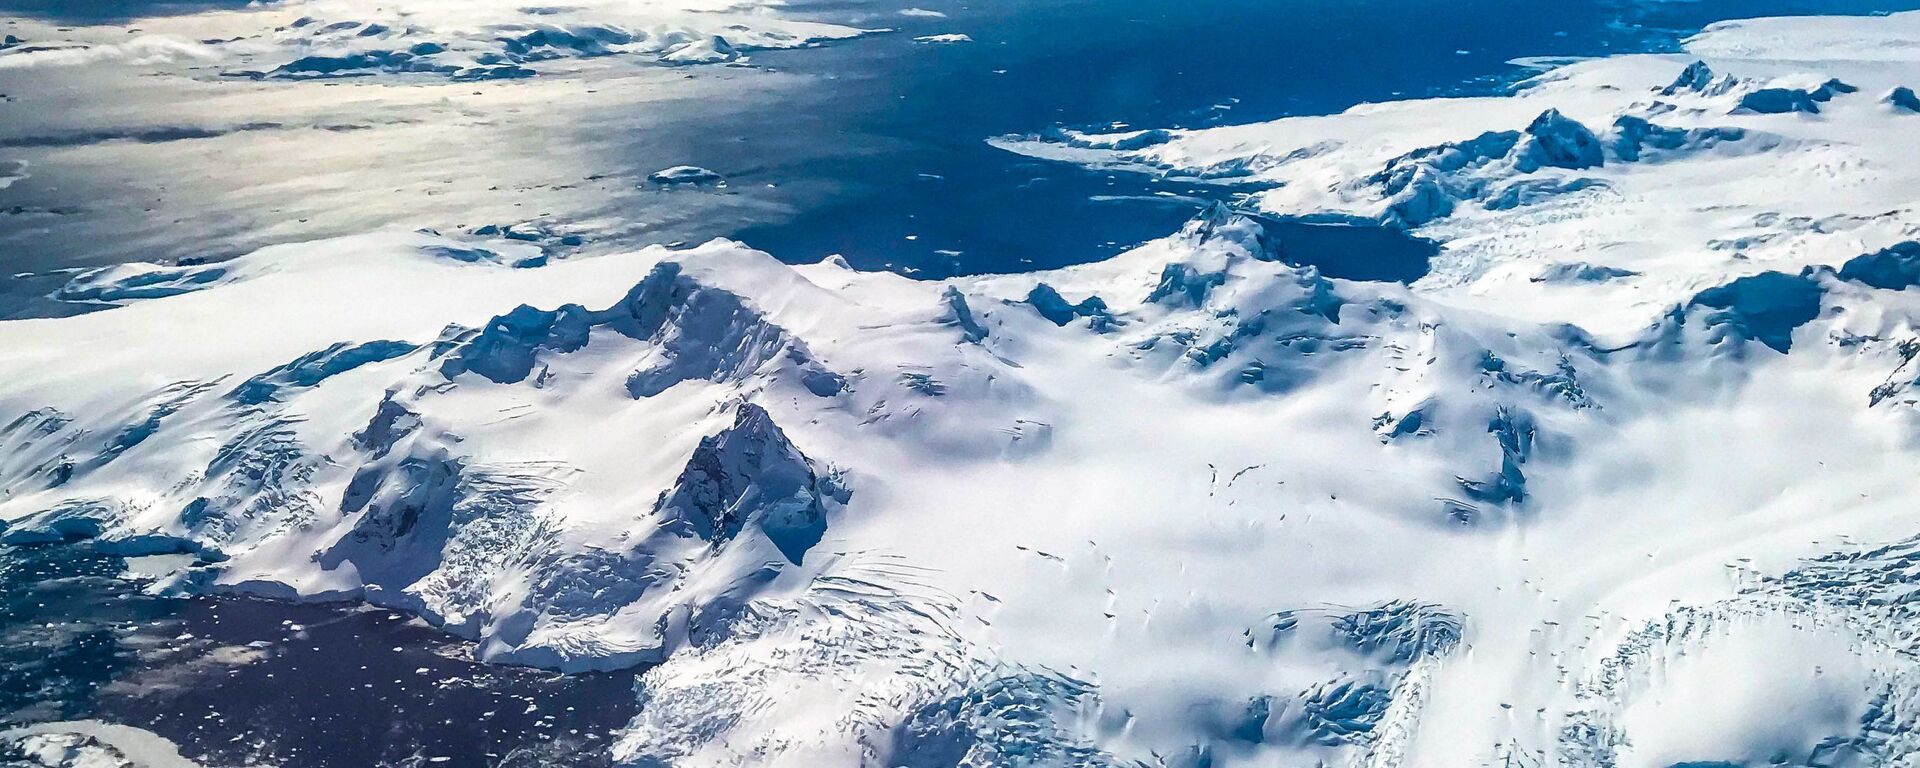  جبل الجليد A68، القارة القطبية الجنوبية، عام 2017 - سبوتنيك عربي, 1920, 15.09.2021